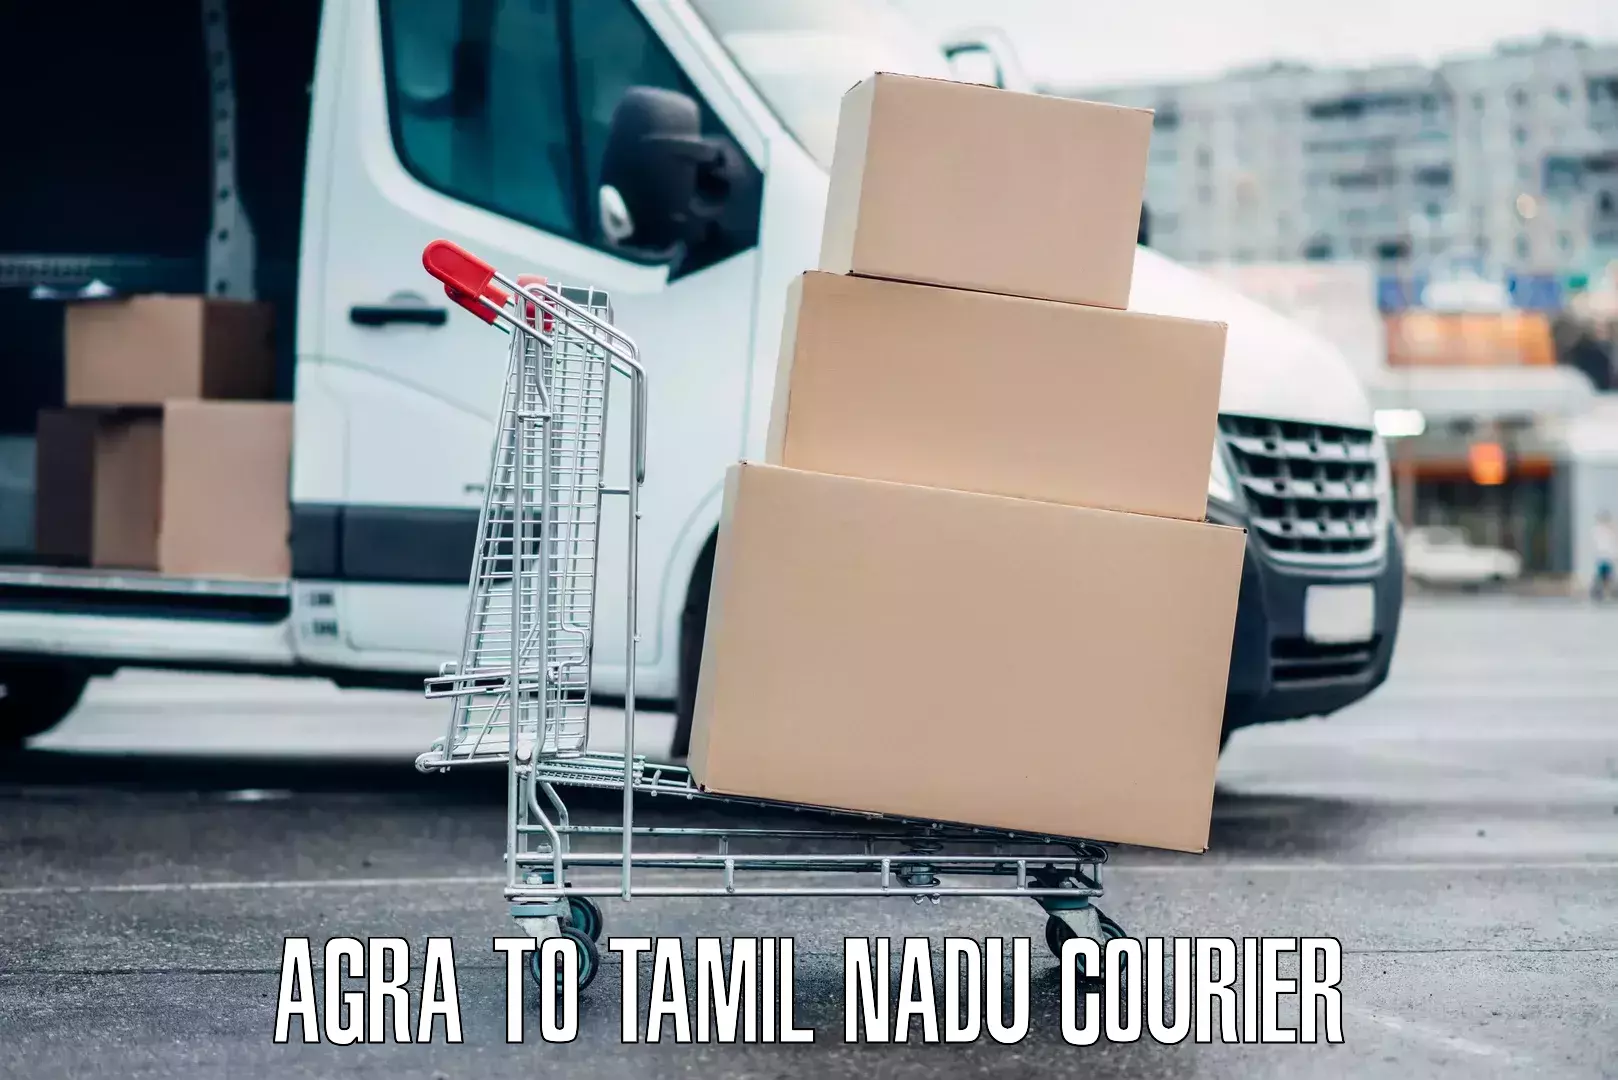 Luggage shipment specialists Agra to Tamil Nadu